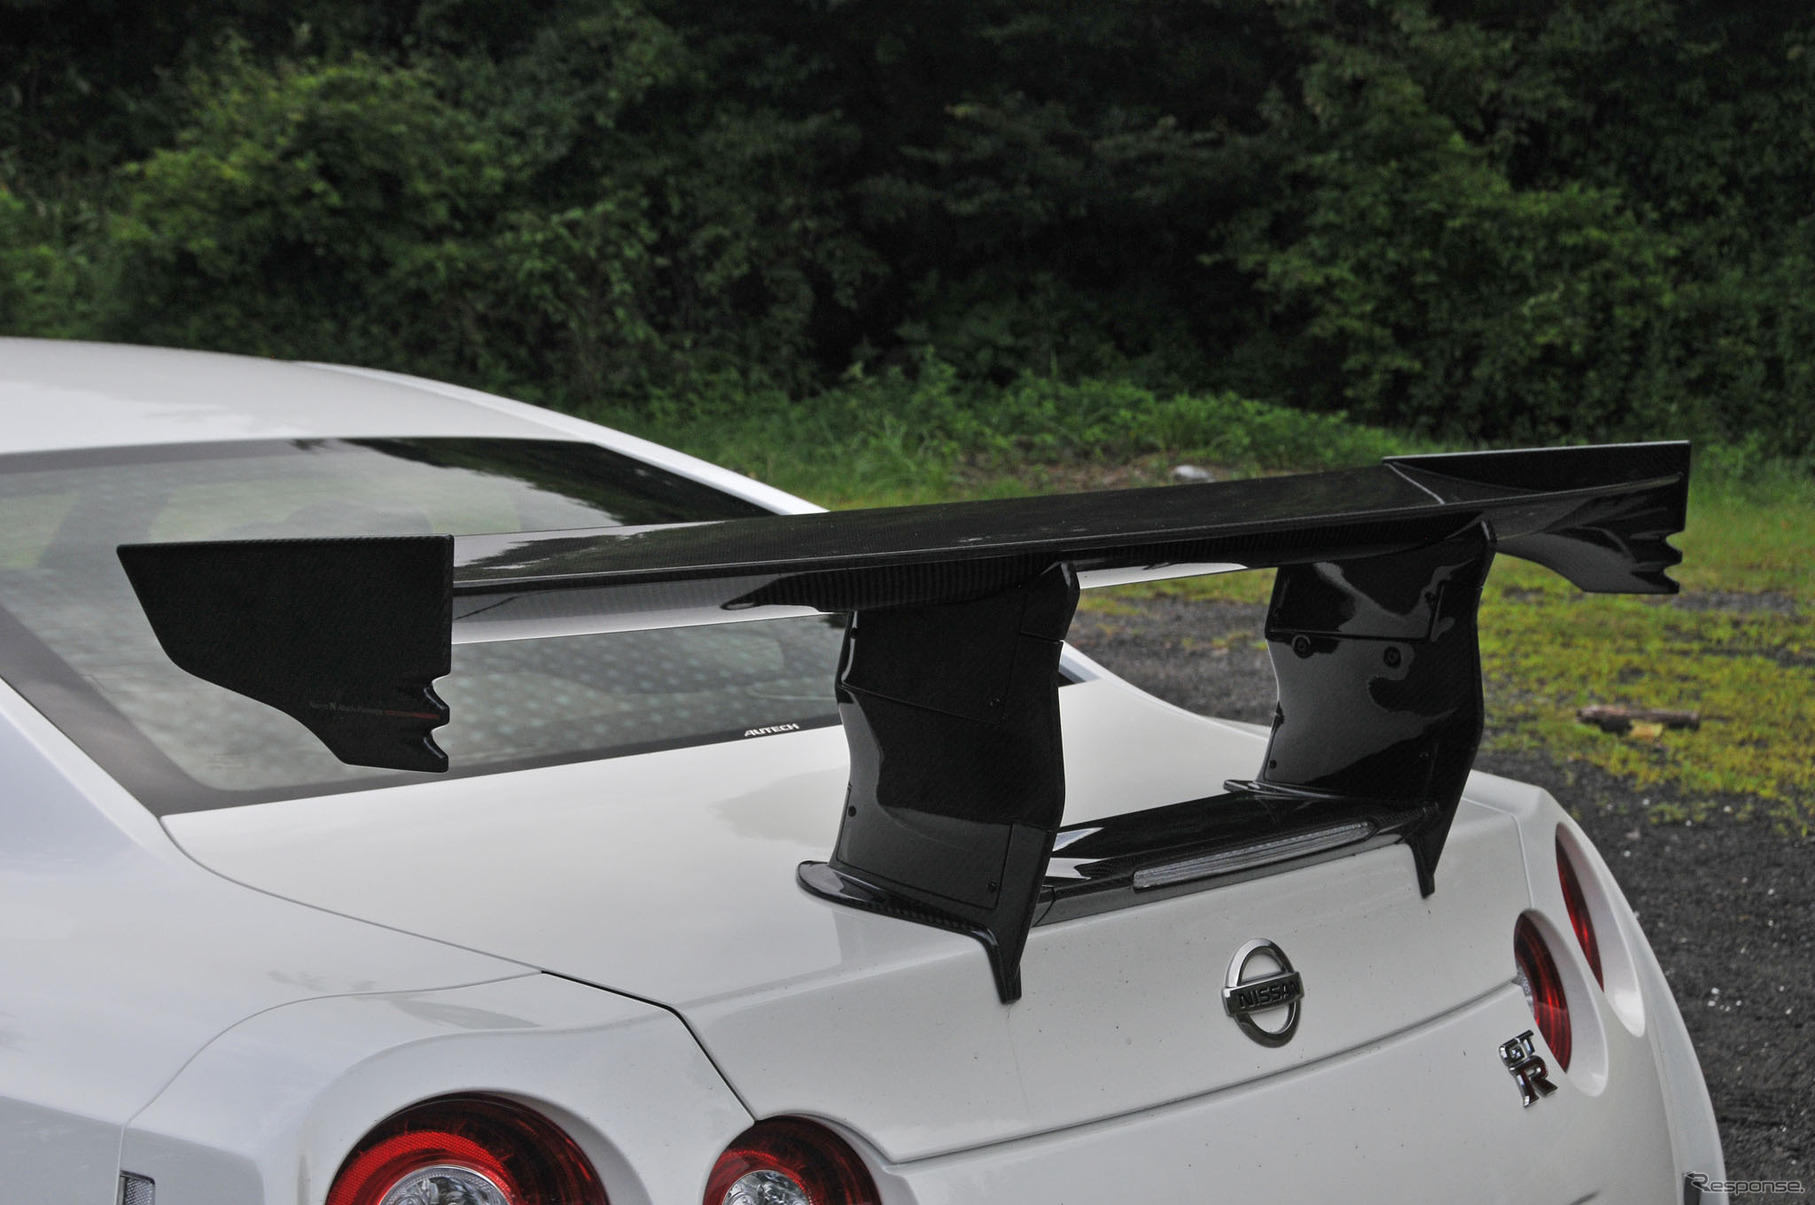 日産 GT-R  NISMOパーツ装着車